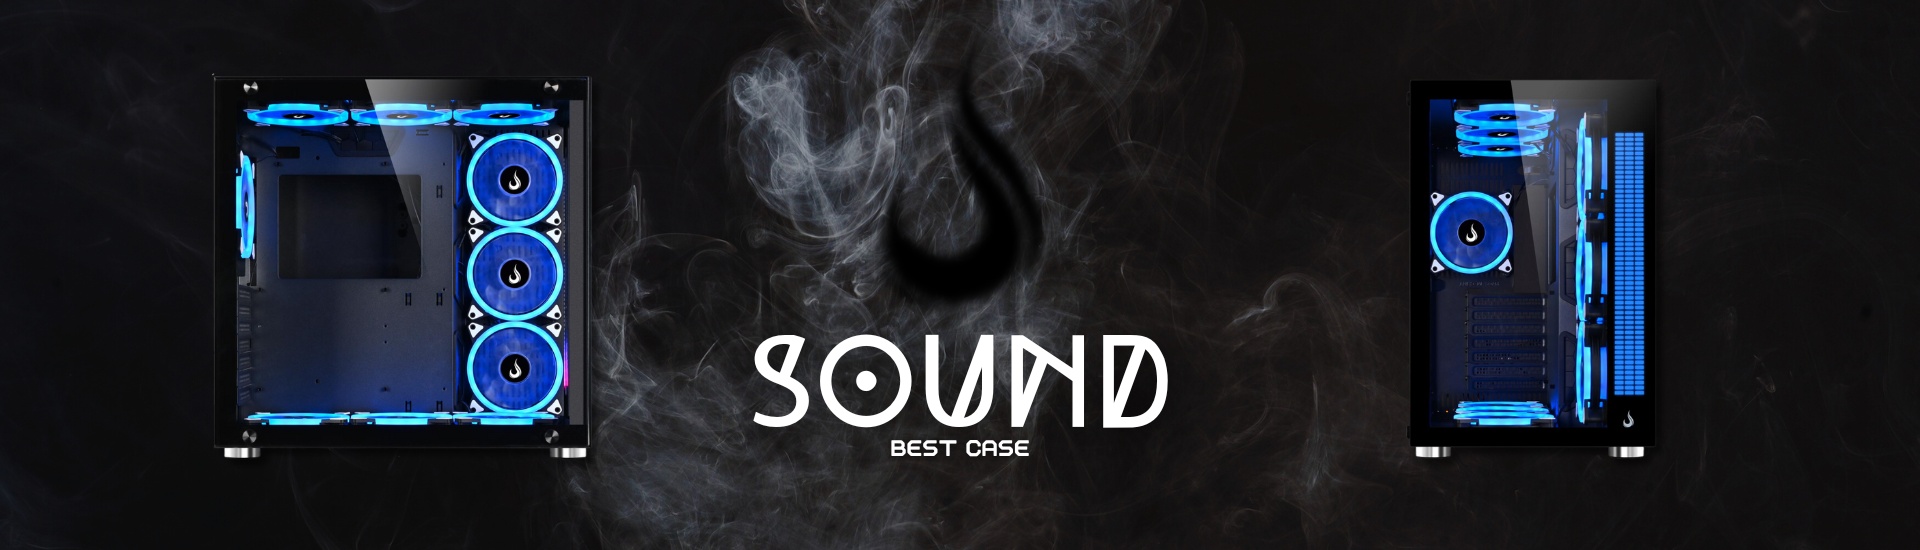 Sound - Best Case